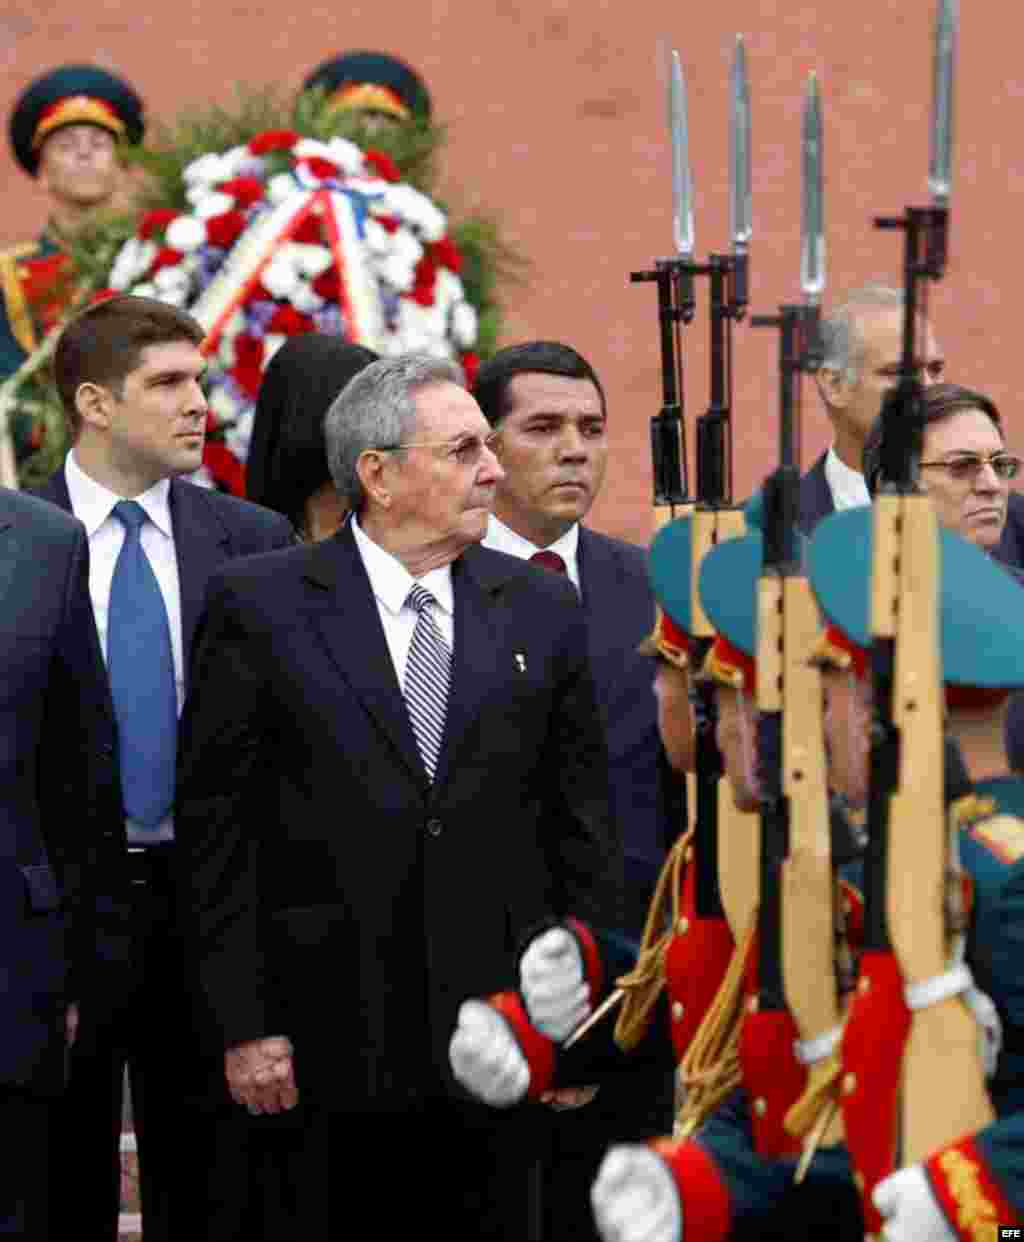 Raúl Castro en un desfile militar durante una ceremonia de homenaje en la Tumba del Soldado Desconocido cerca de los muros del Kremlin en Moscú, Rusia.